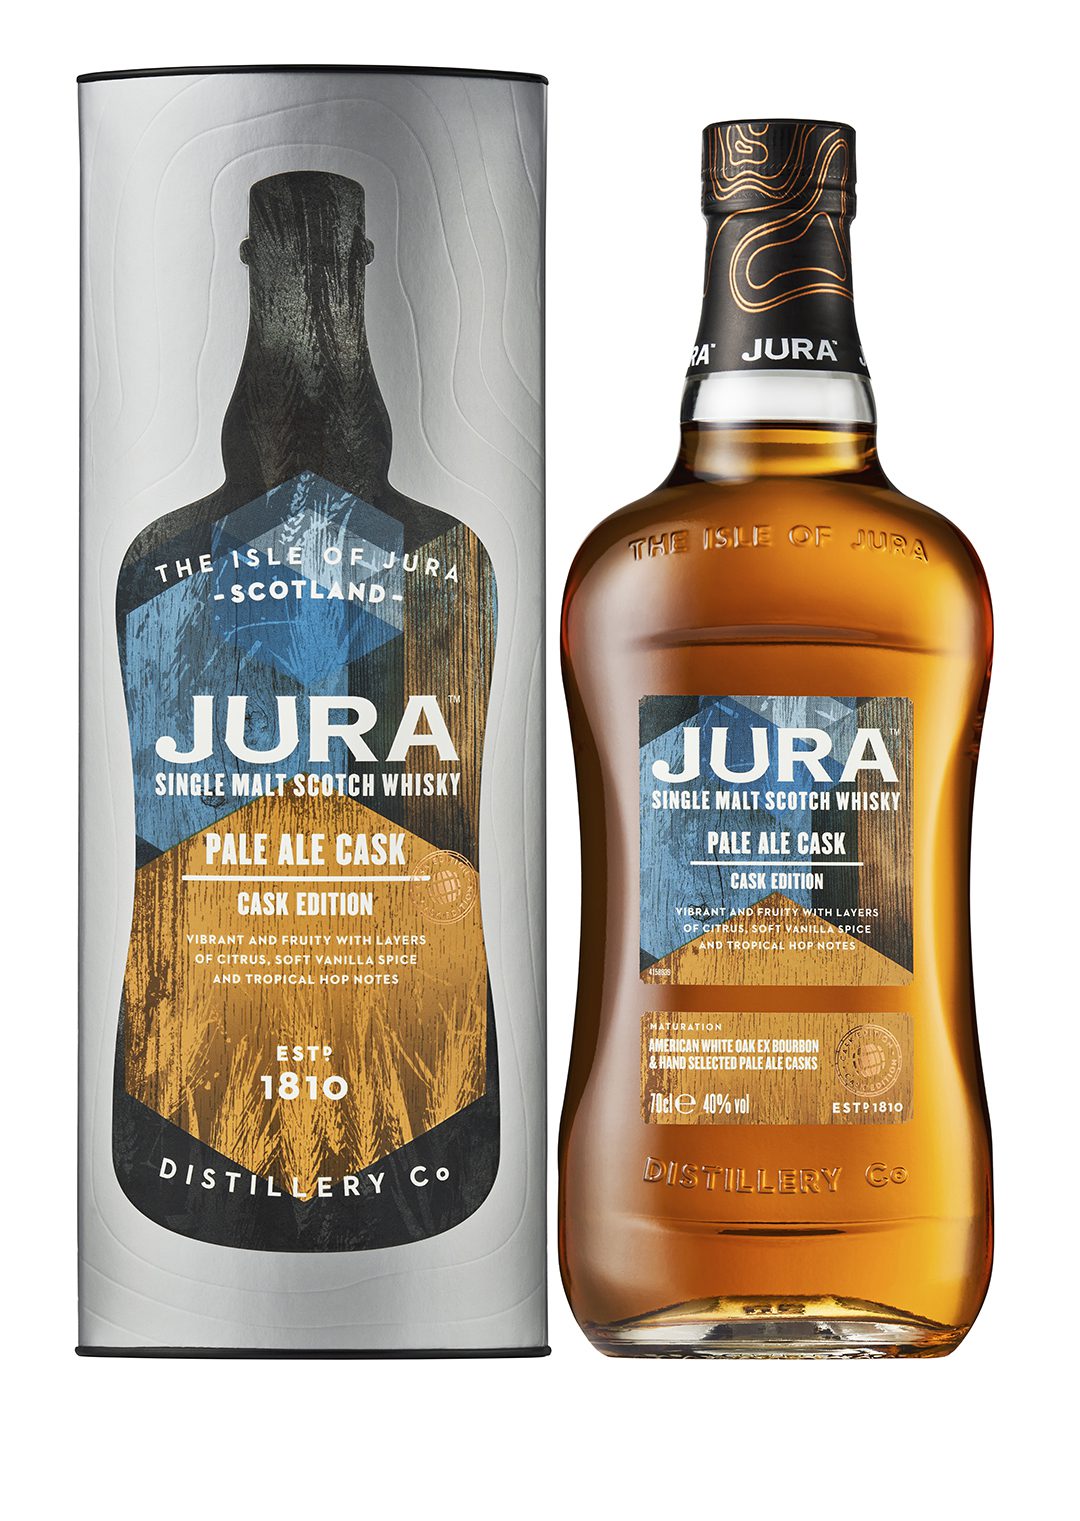 Jura Single Malt Scotch Whisky Pale Ale Cask Edition